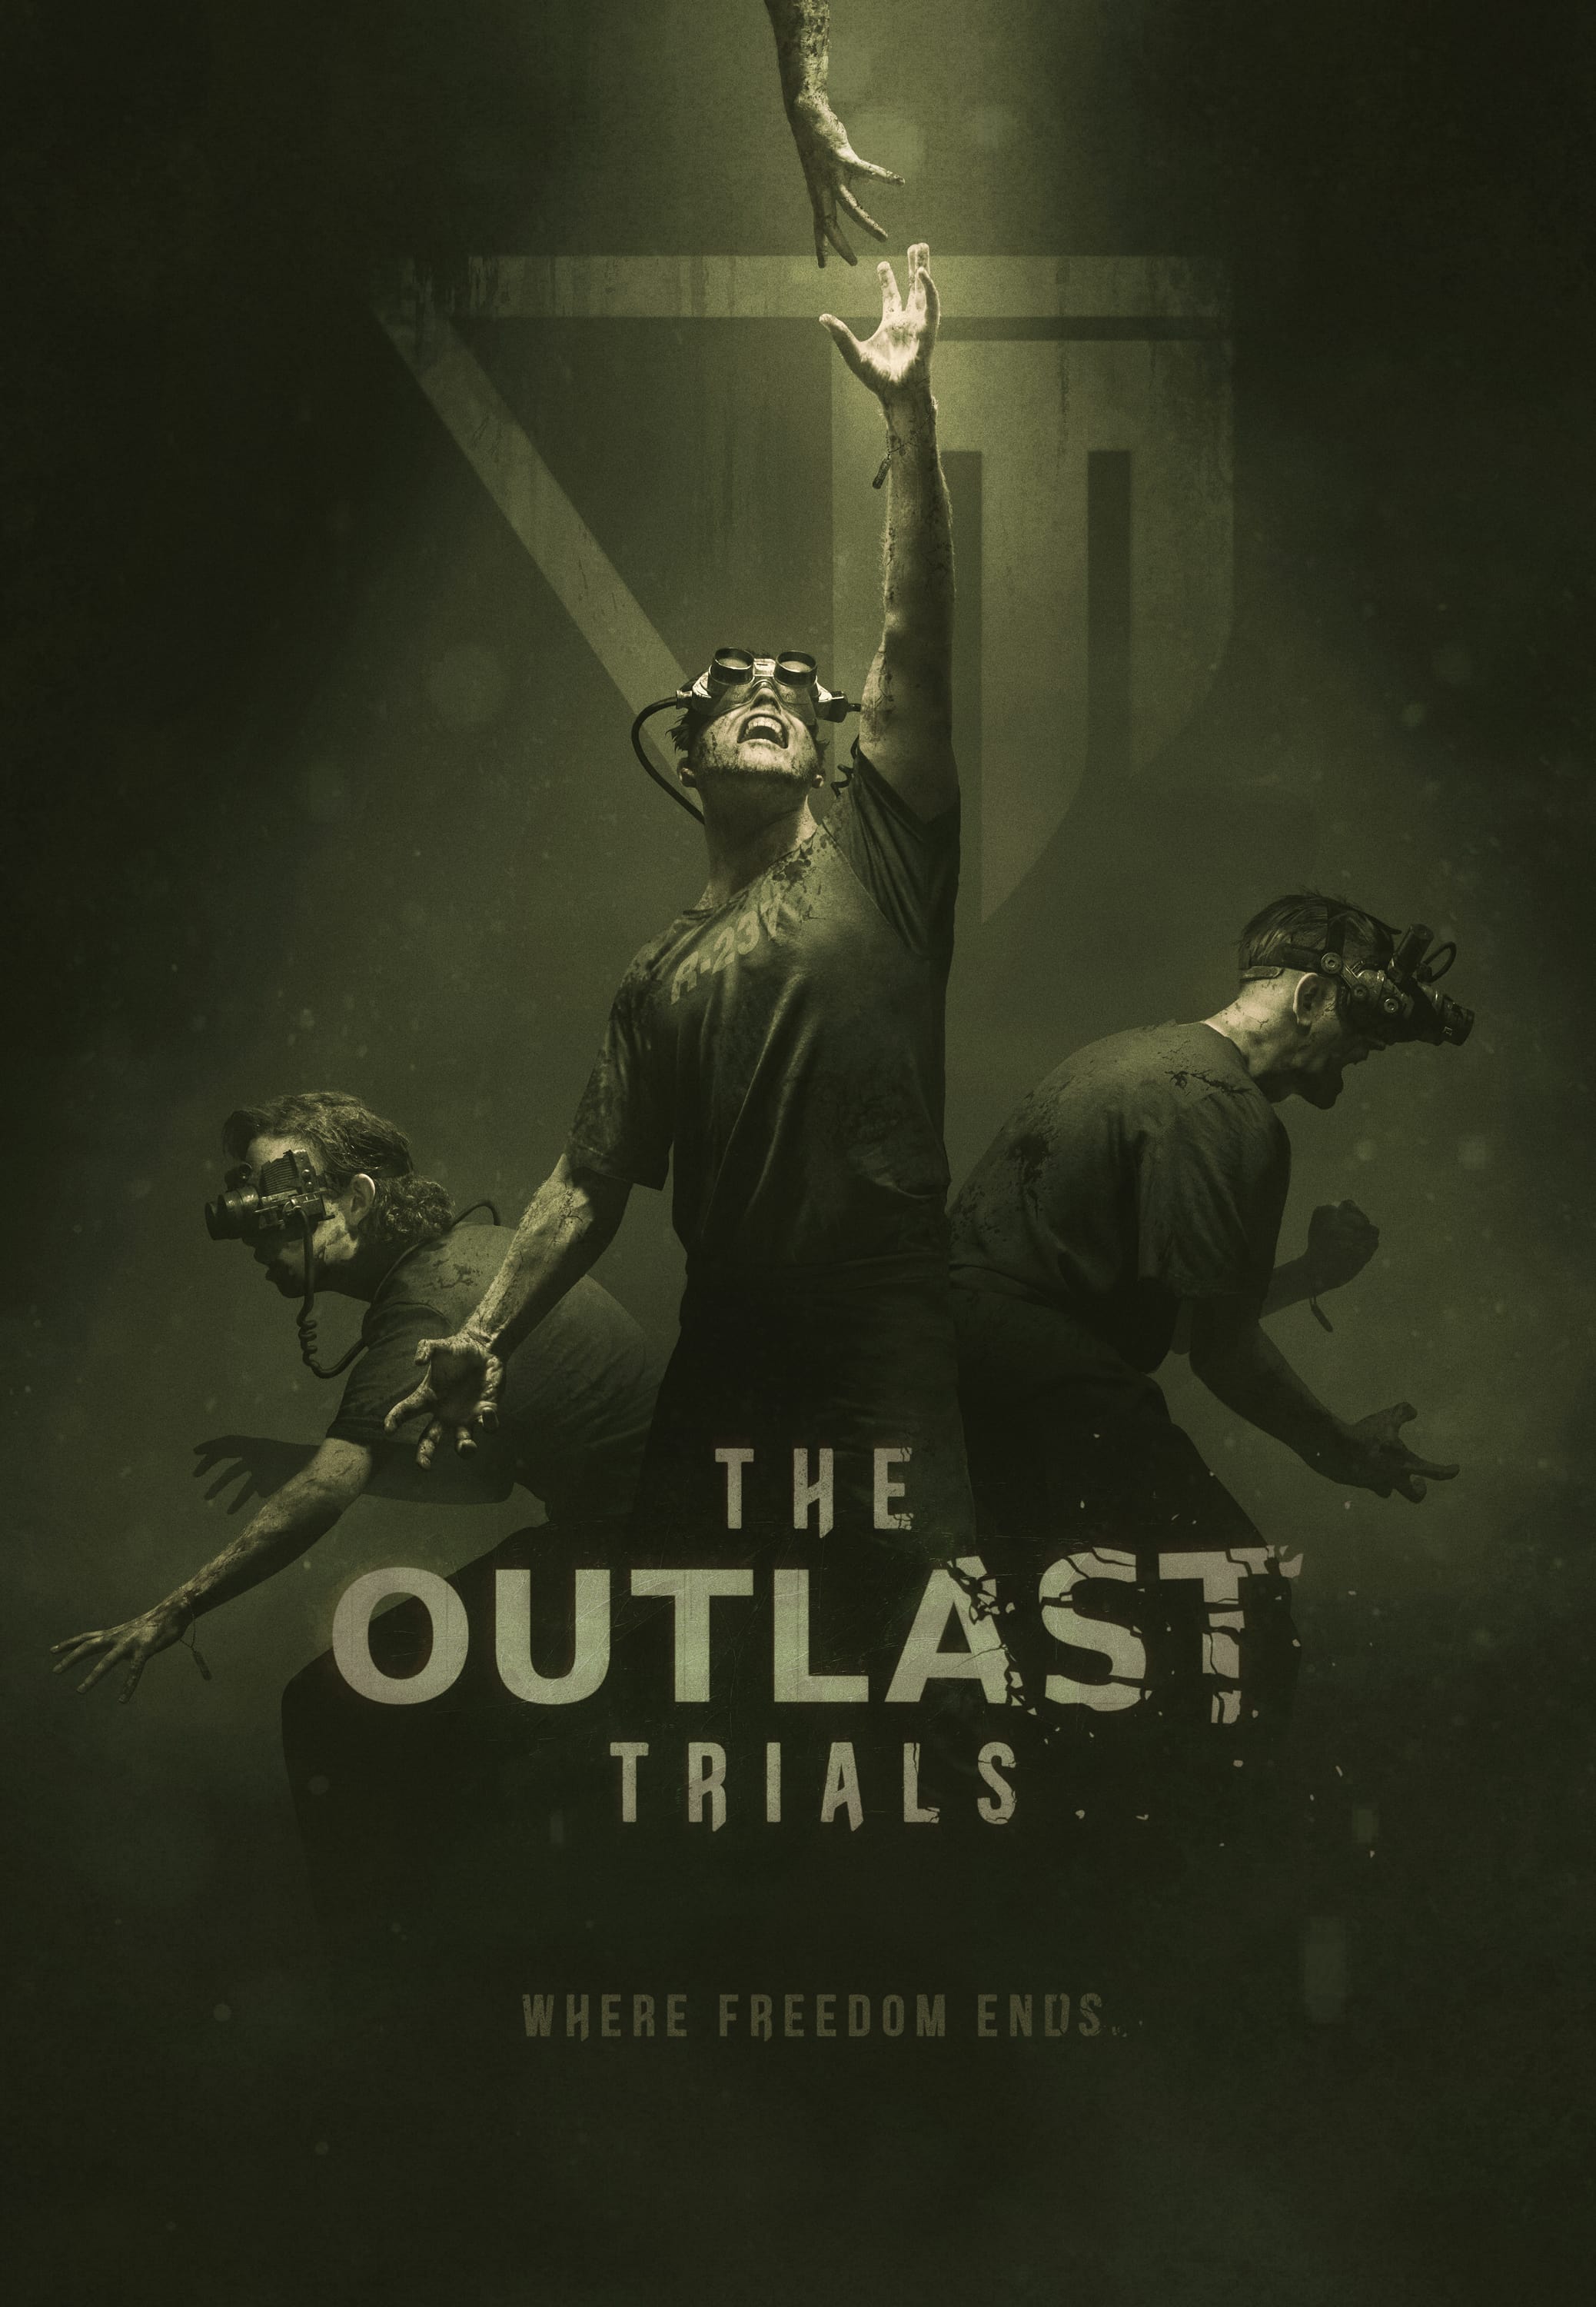 The Outlast Trials announced Gematsu